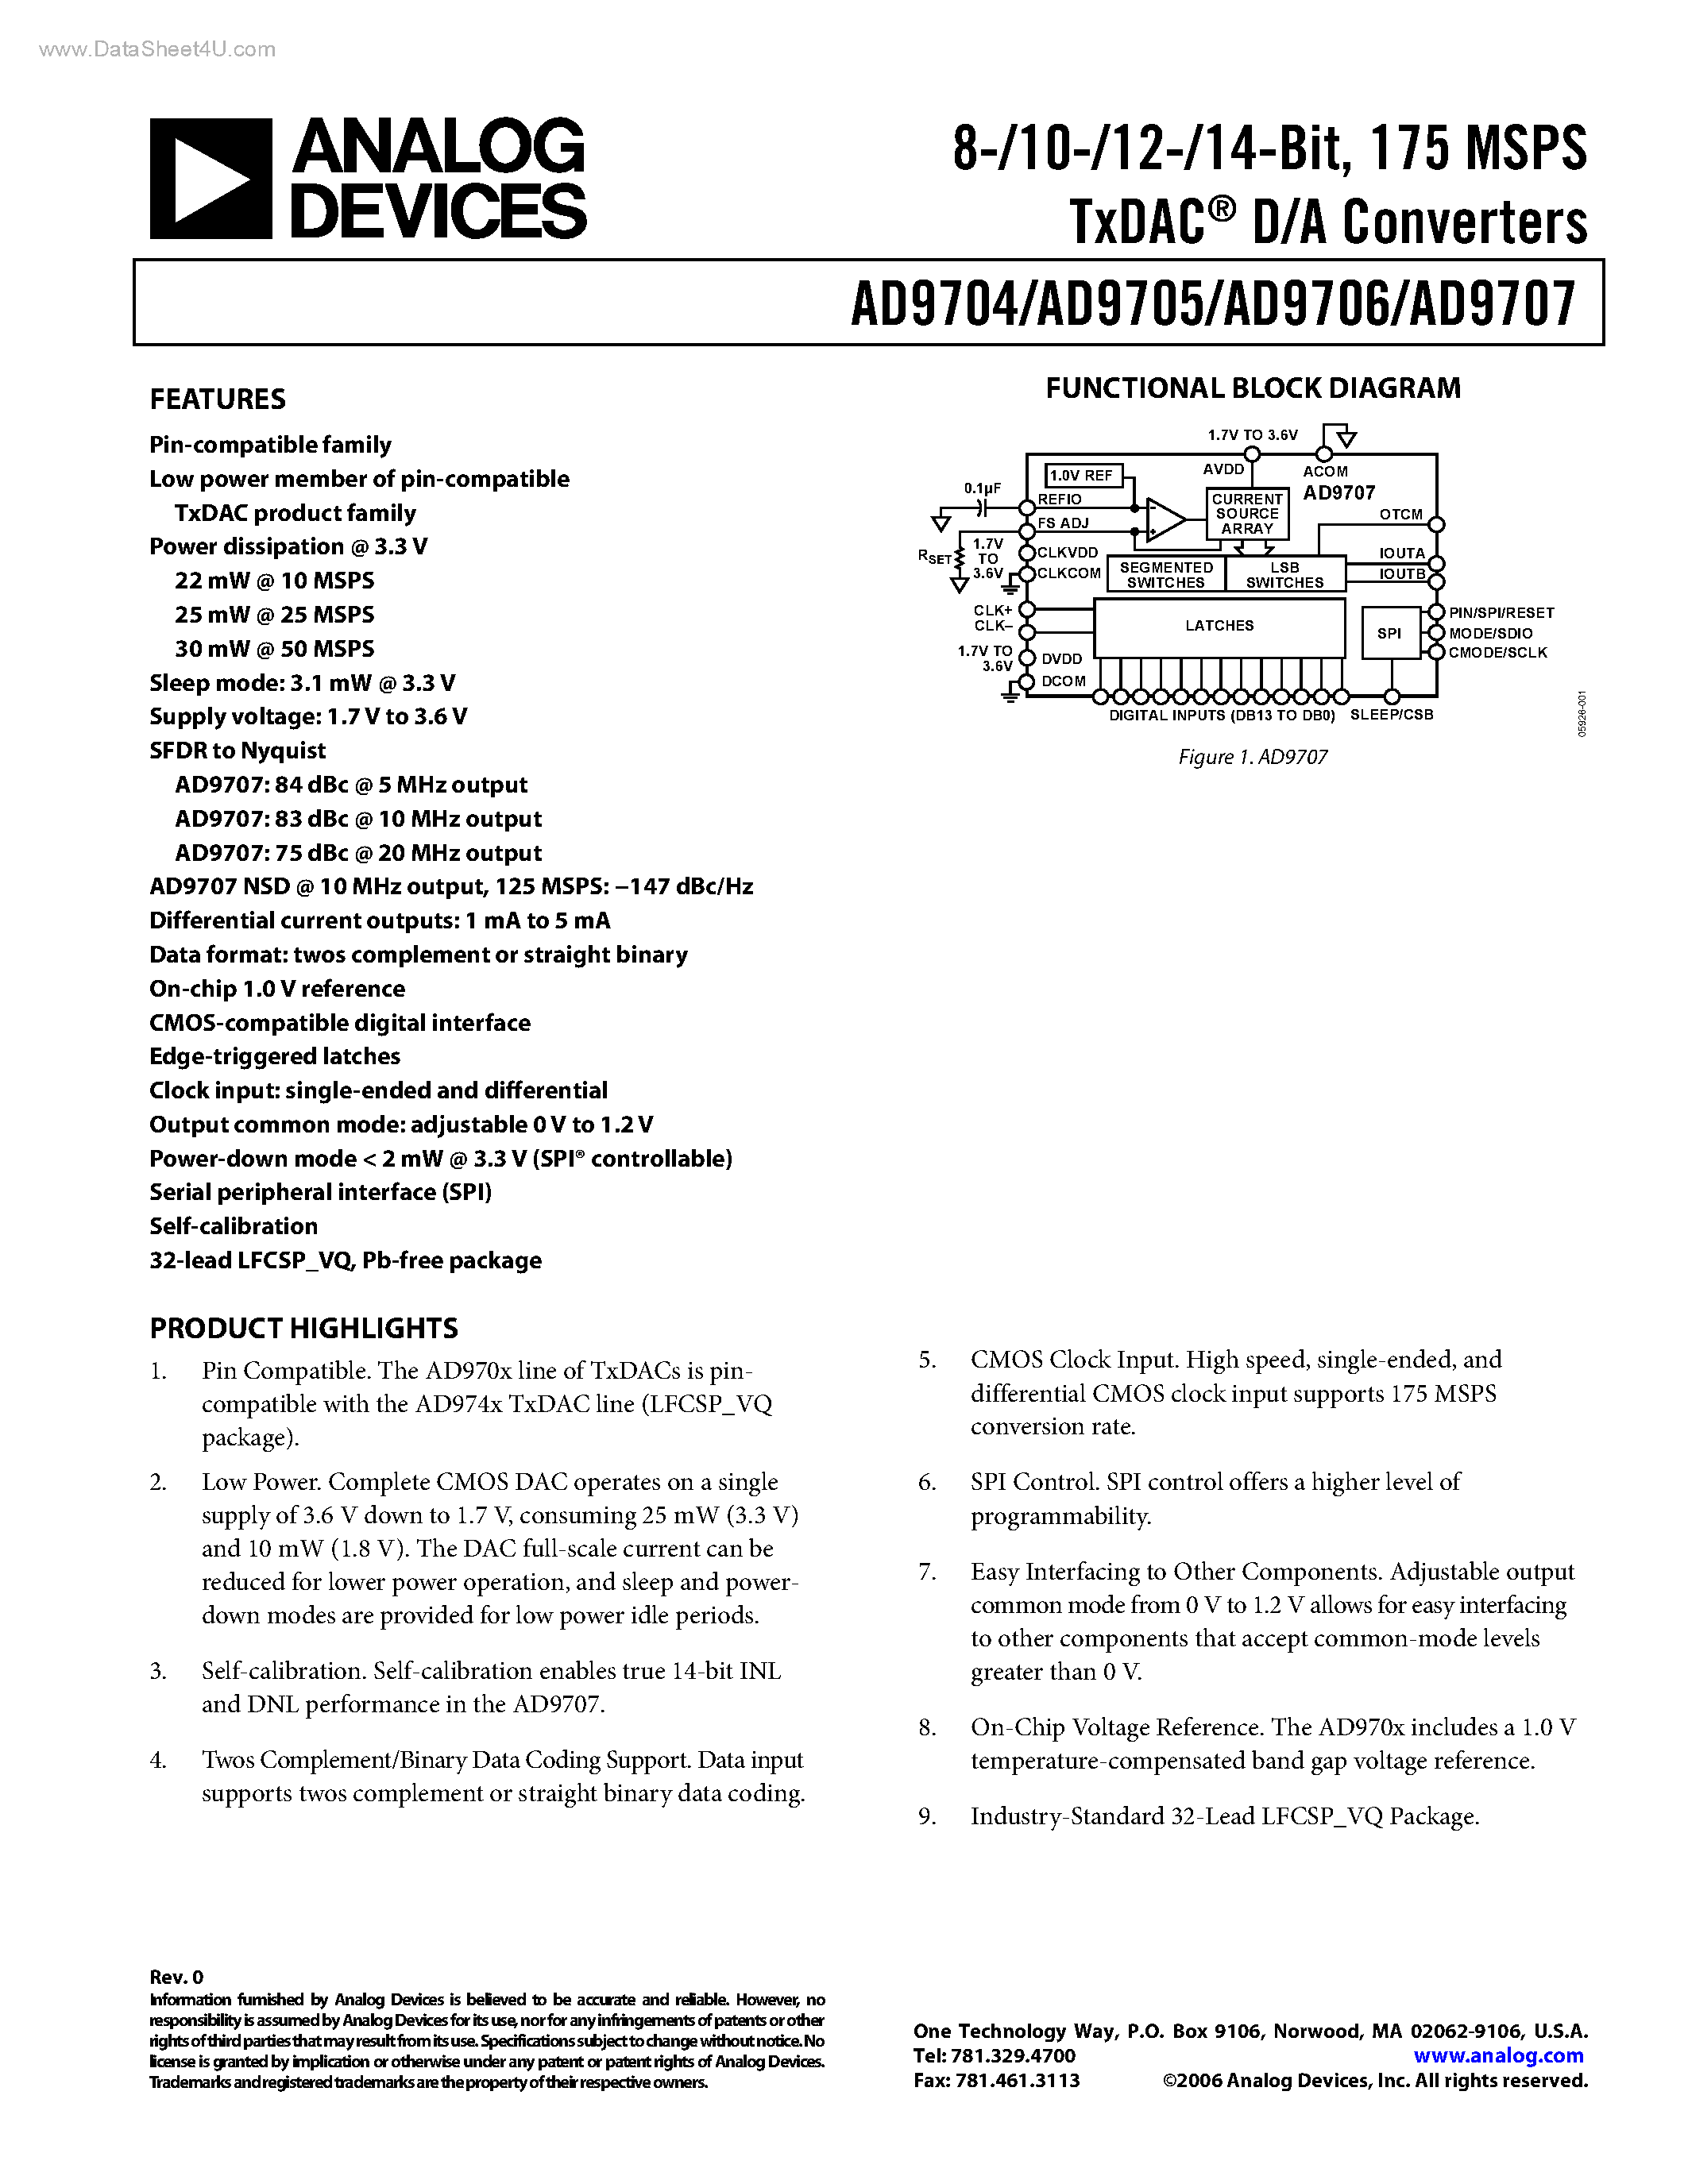 Даташит AD9705 - (AD9704 - AD9707) TxDAC D/A Converters страница 1